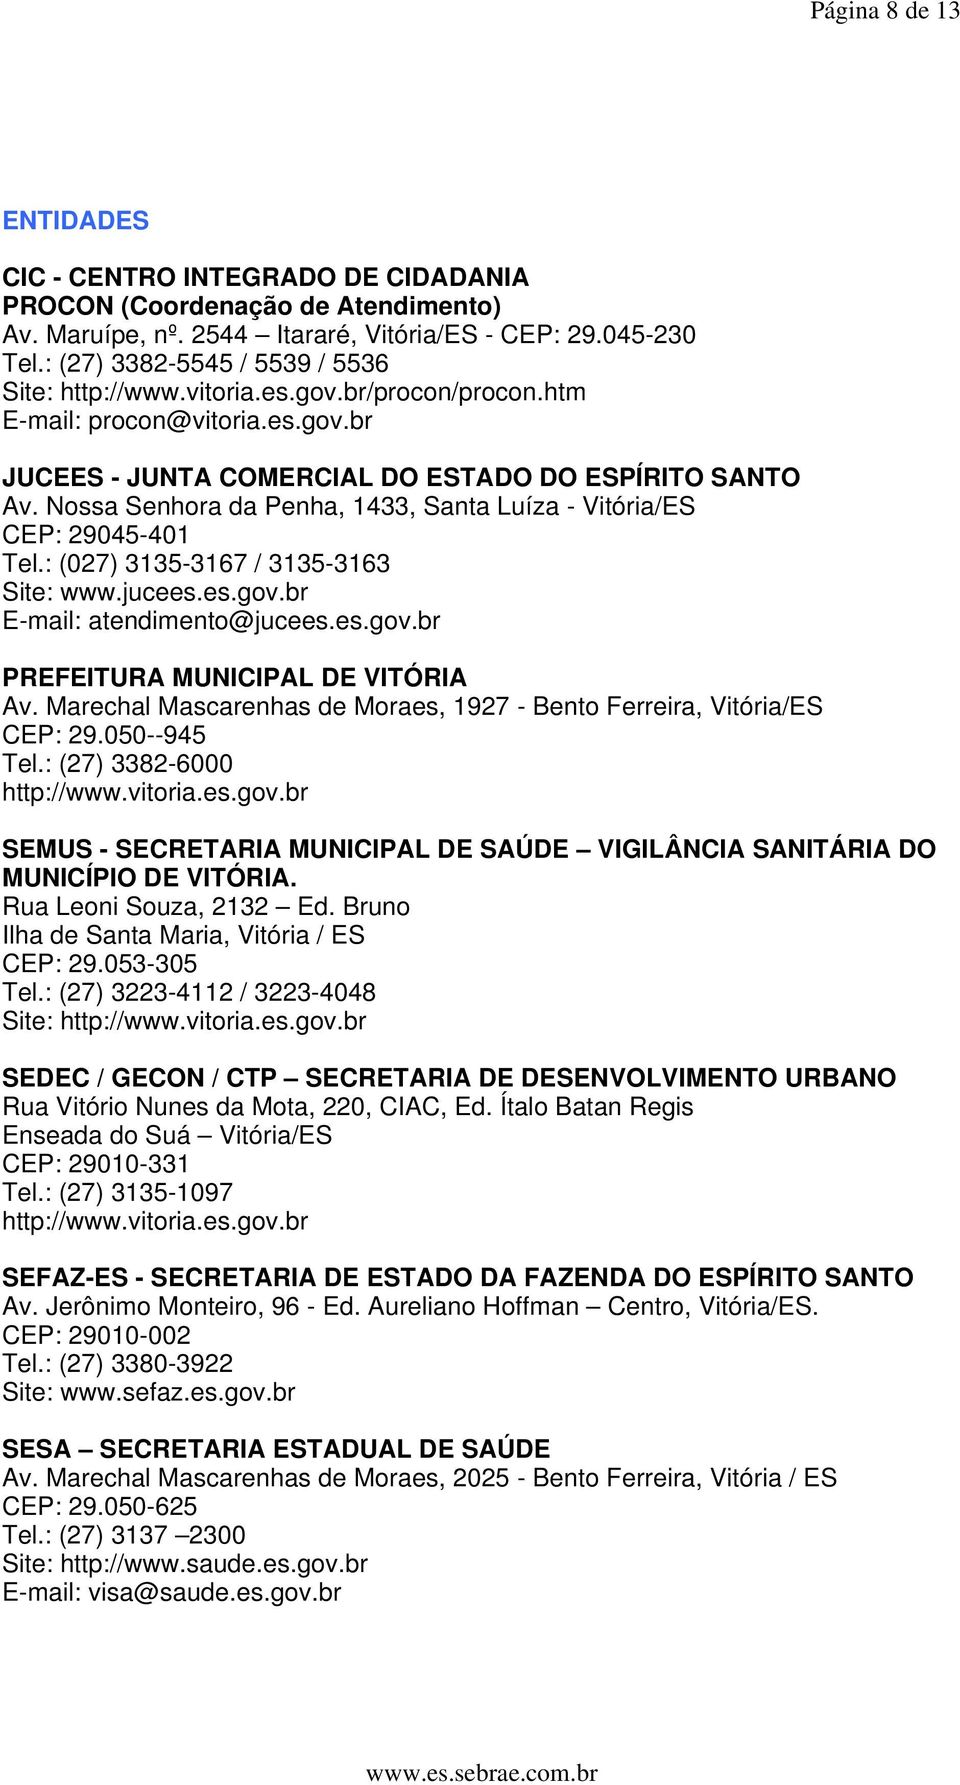 Nossa Senhora da Penha, 1433, Santa Luíza - Vitória/ES CEP: 29045-401 Tel.: (027) 3135-3167 / 3135-3163 Site: www.jucees.es.gov.br E-mail: atendimento@jucees.es.gov.br PREFEITURA MUNICIPAL DE VITÓRIA Av.